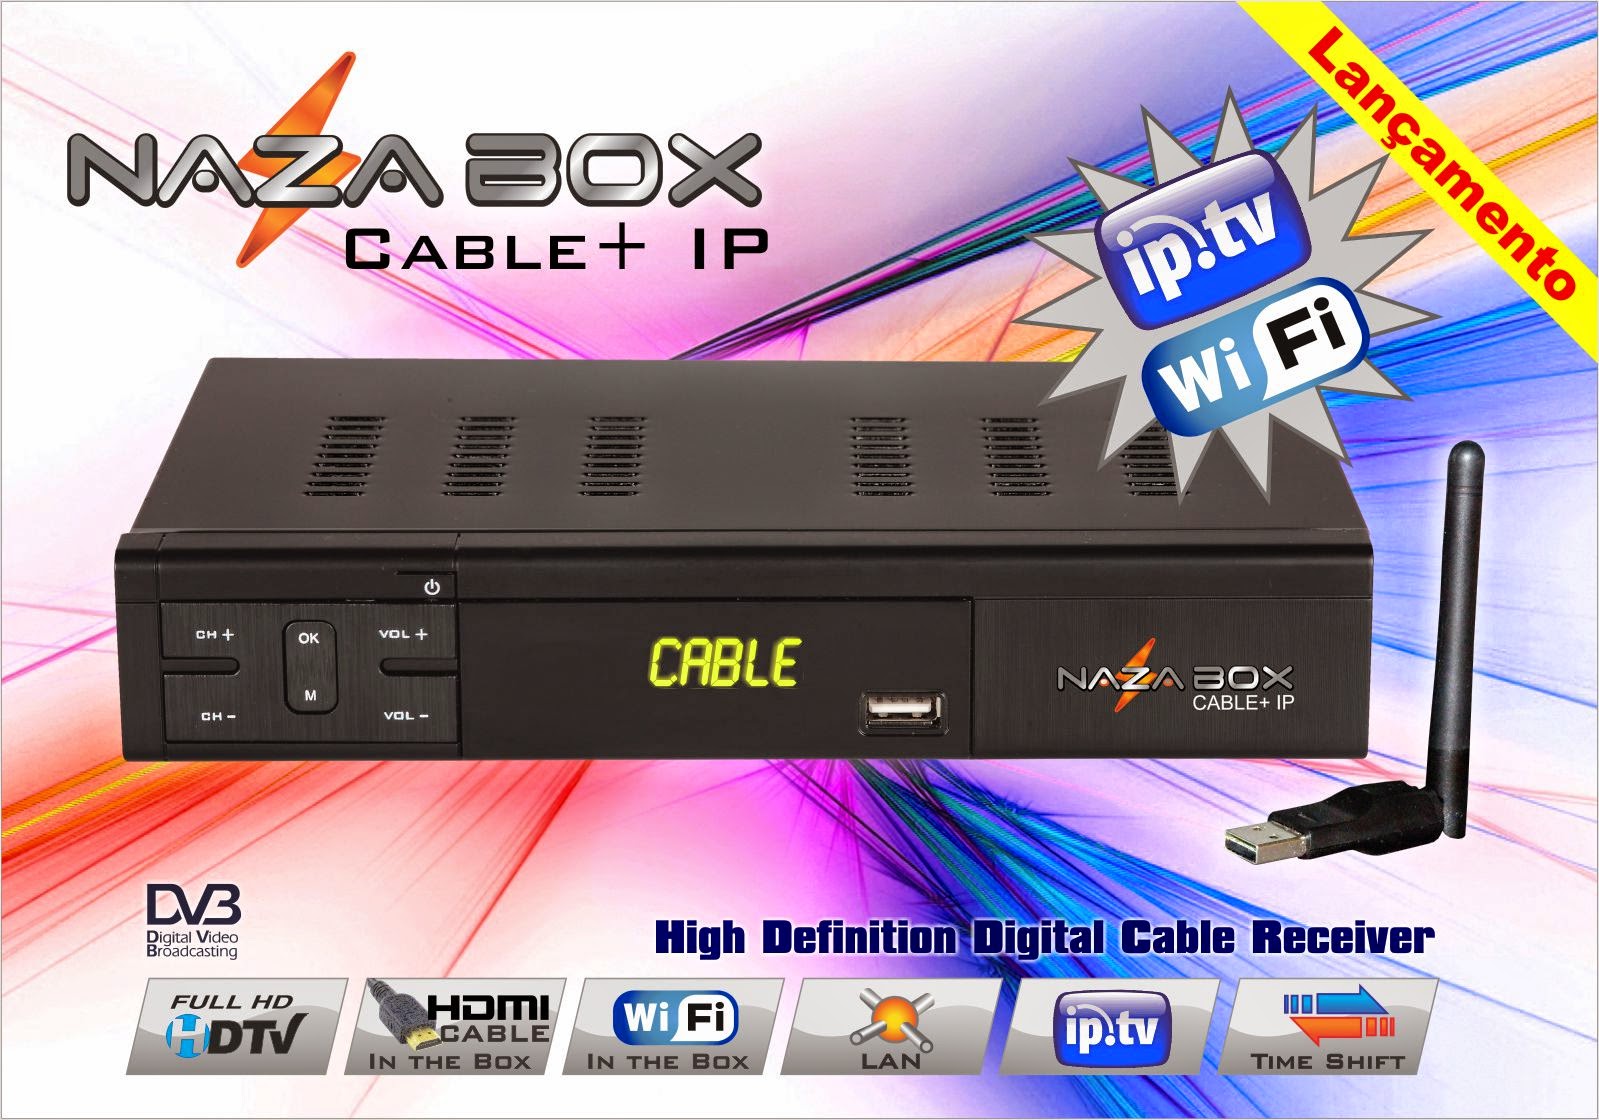 CABLE - Nova Atualização Nazabox Cable +iptv   HD.data 02/07/2014. Panfleto+Cable++IP